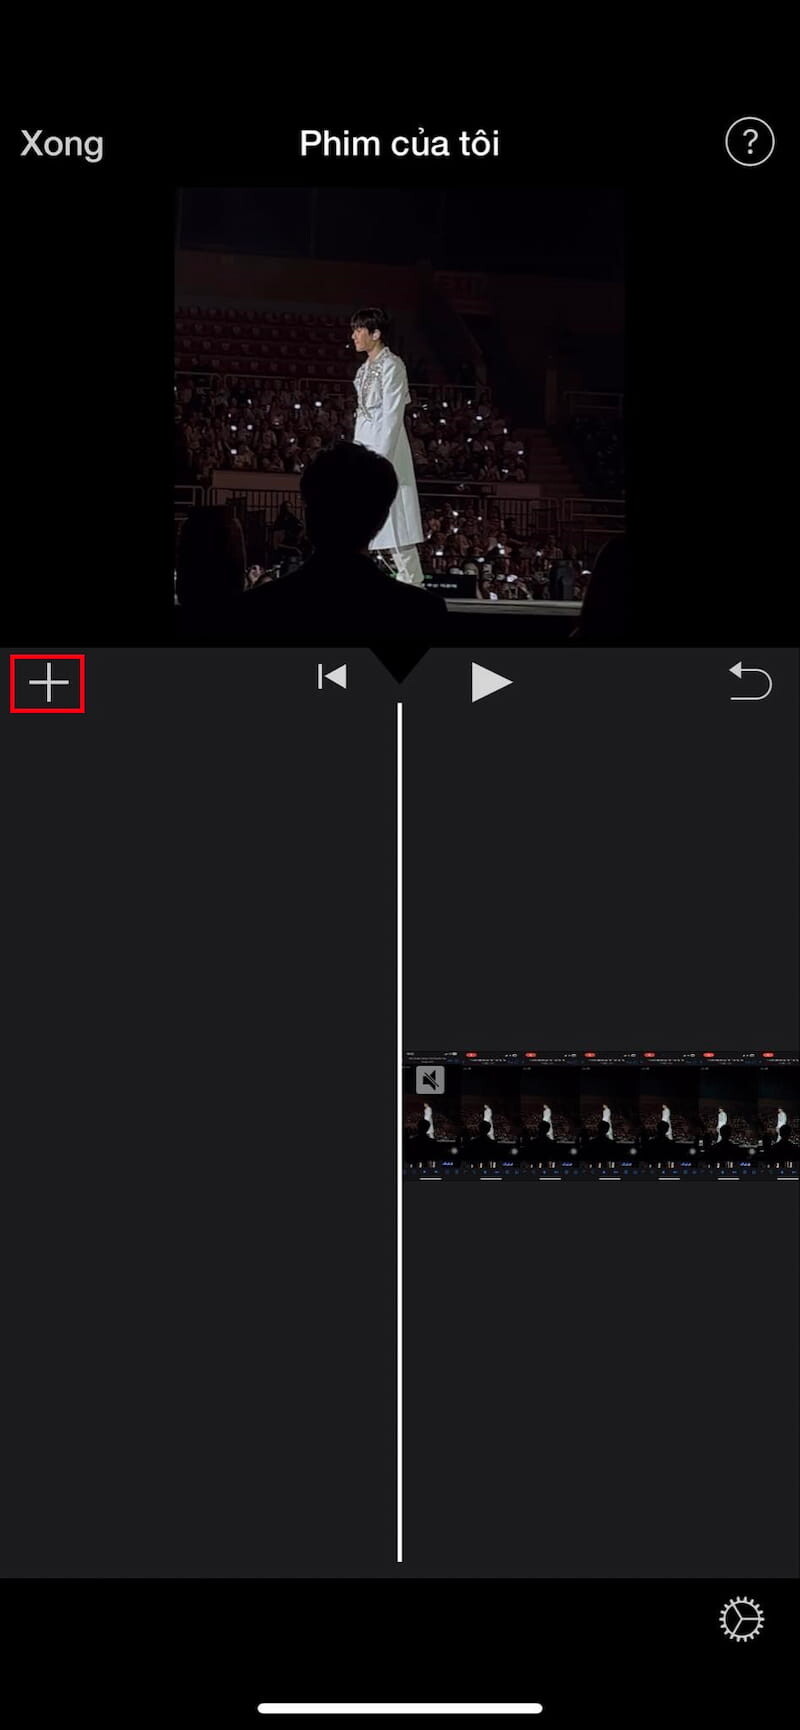 Tách âm thanh ra khỏi video trên iPhone bằng iMovie 5